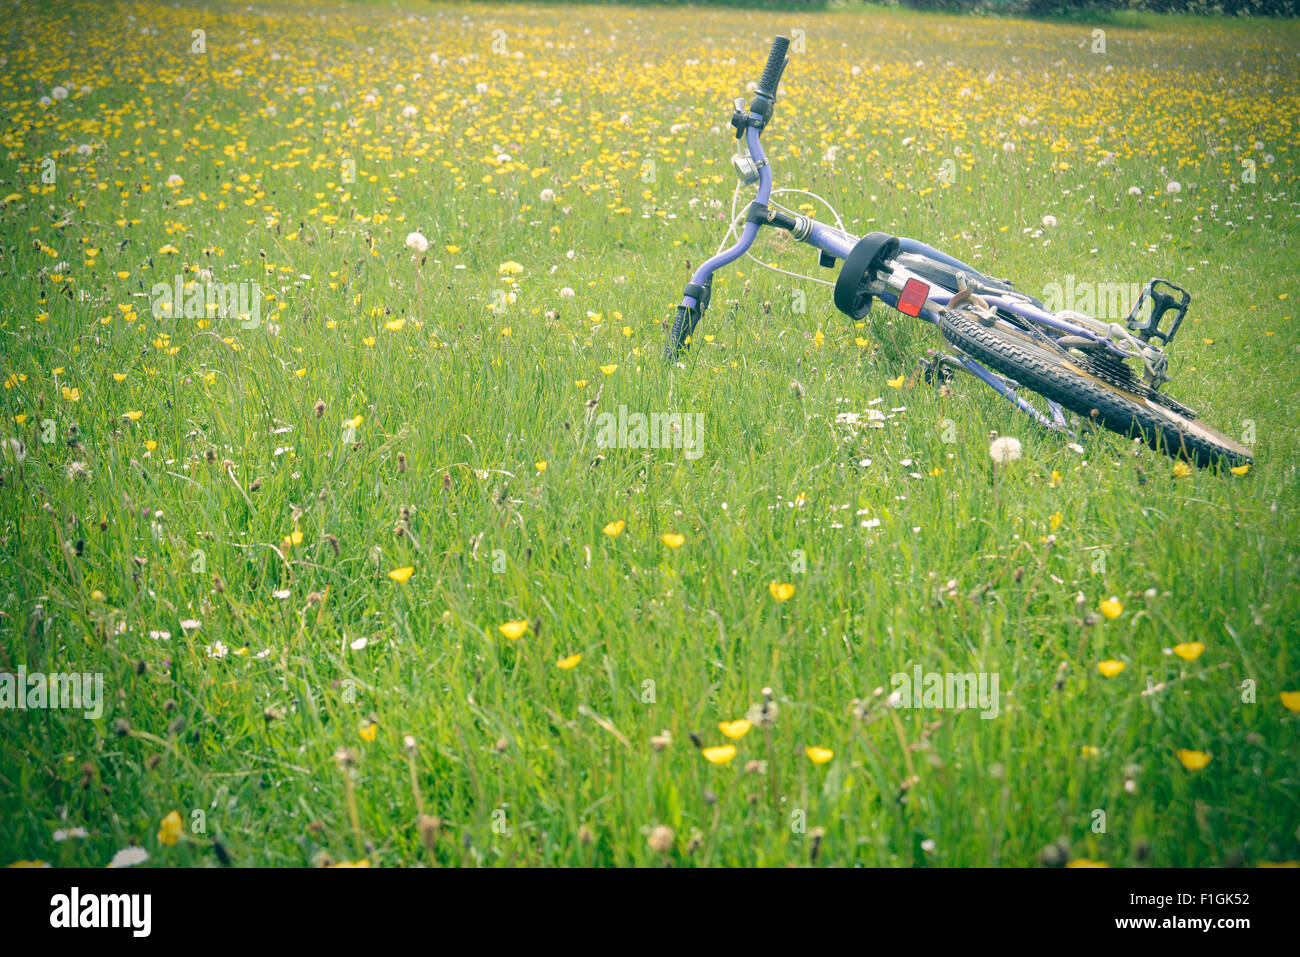 Posa di bicicletta in erba Foto Stock